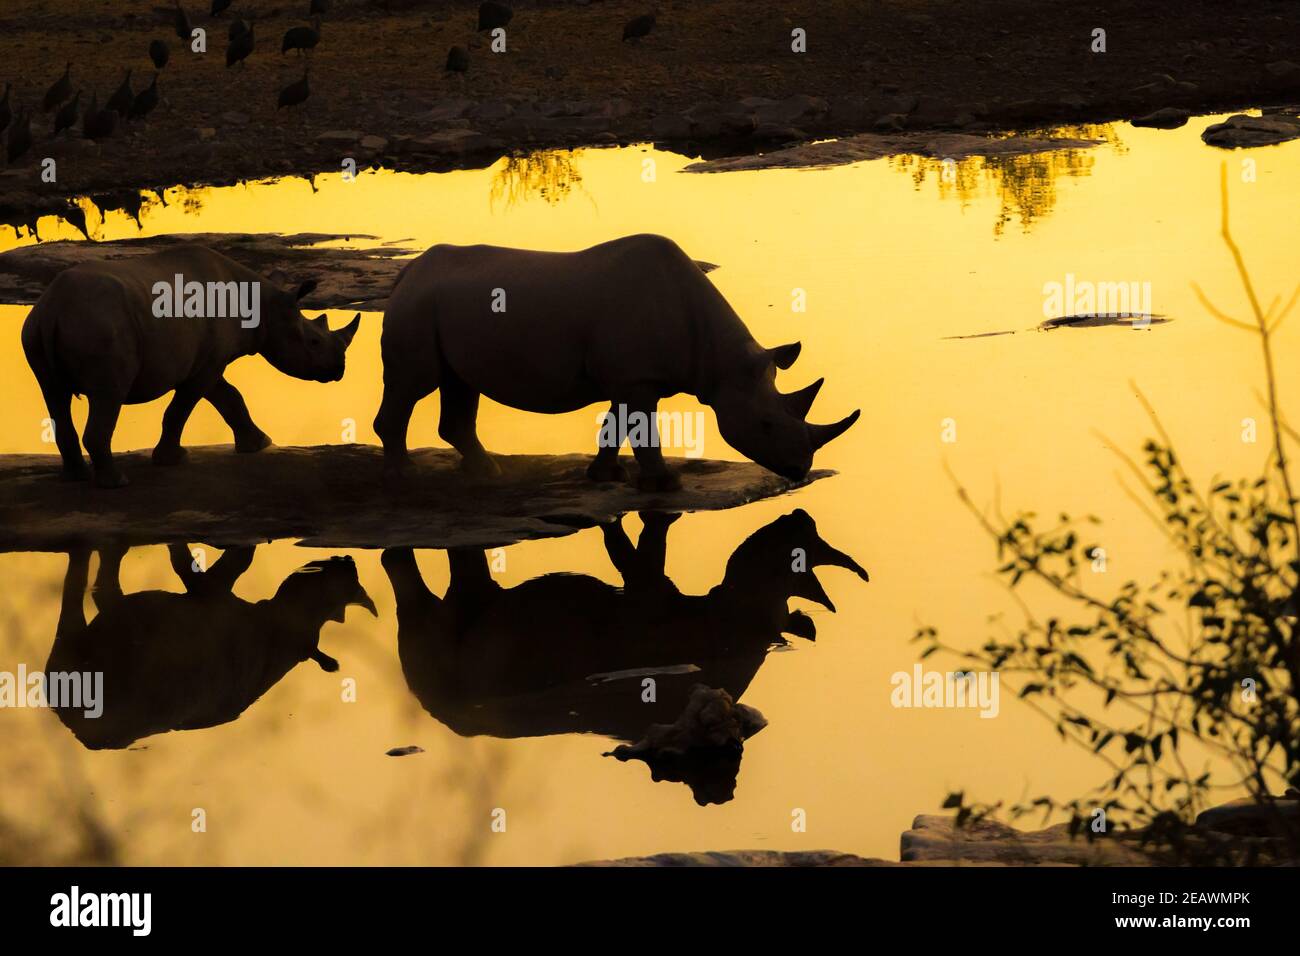 Deux rhinocéros dans un trou d'eau de Halali Camp - reflet Silhouettes dans l'eau - lumière dorée du soir Banque D'Images